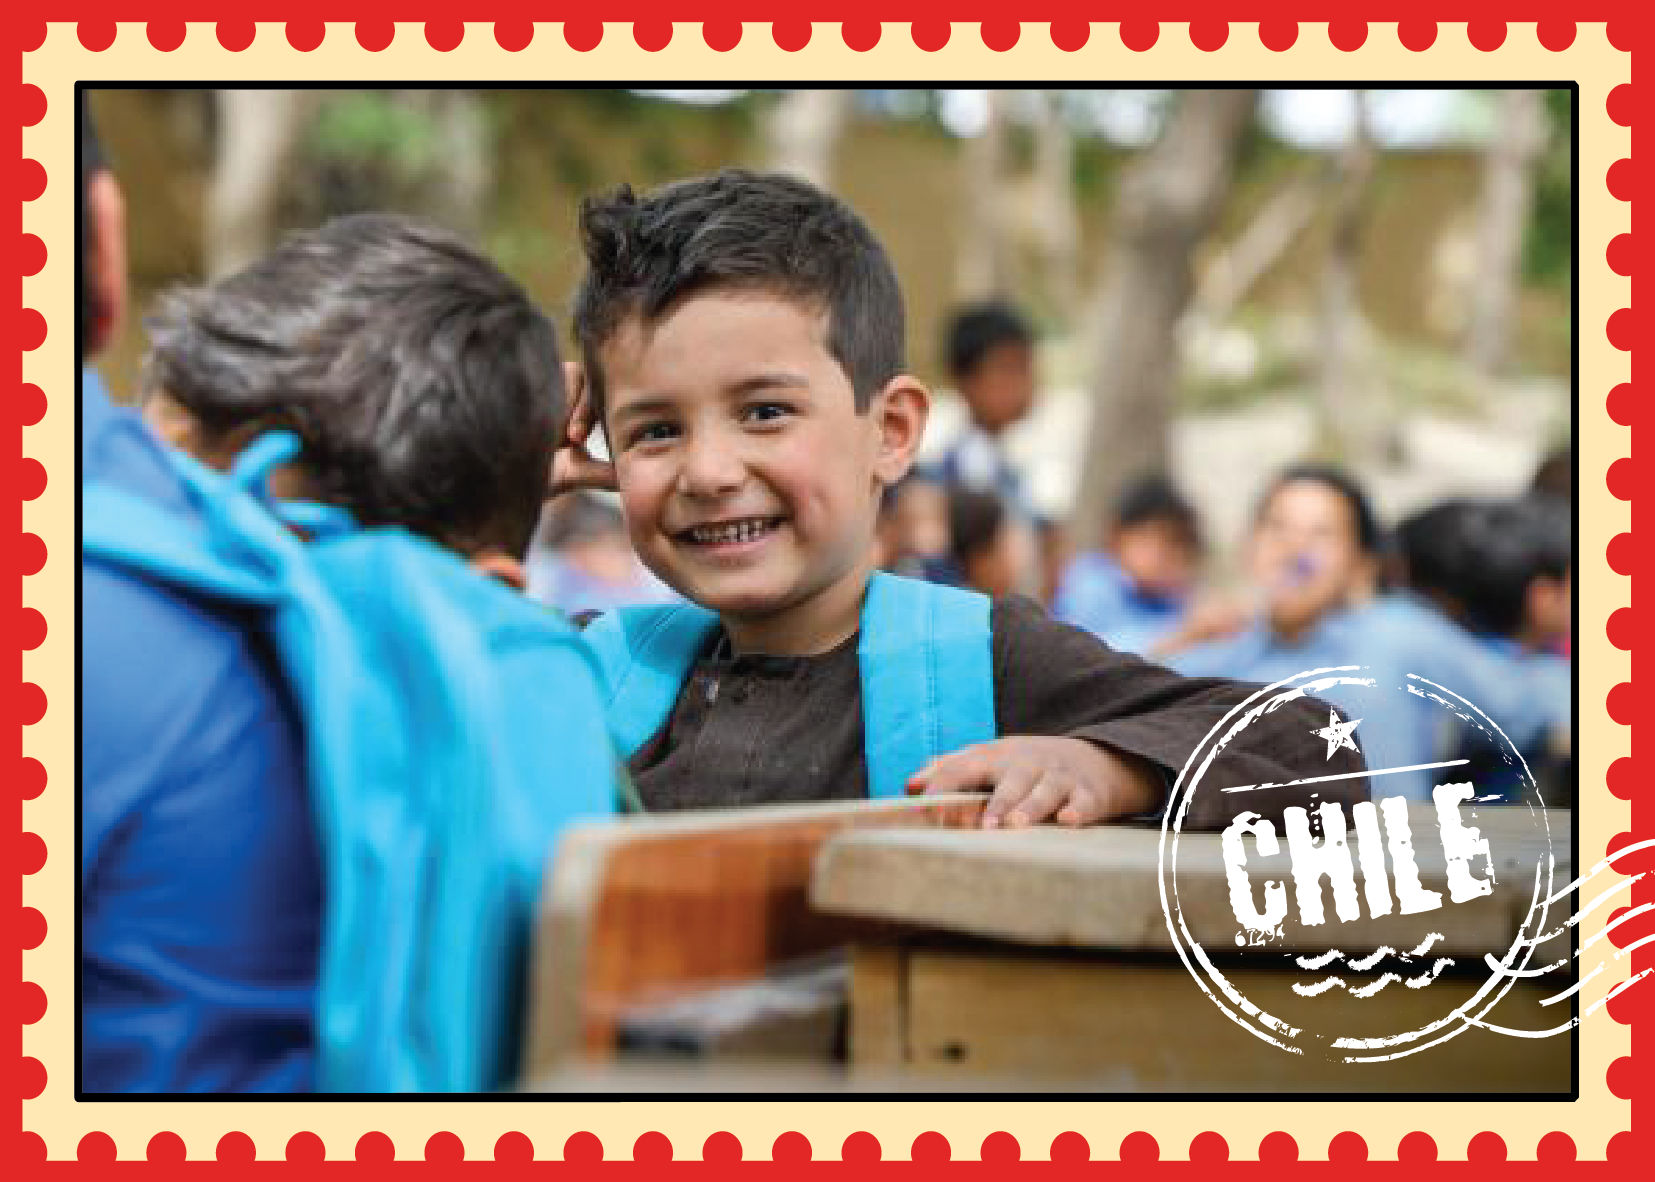 Te comparto esta postal de Chile. Durante el 2021 logramos contribuir junto a UNICEF con el retorno seguro a las salas de clases de niños, niñas y adolescentes. En Chile, #ParaCadaInfancia EDUCACIÓN